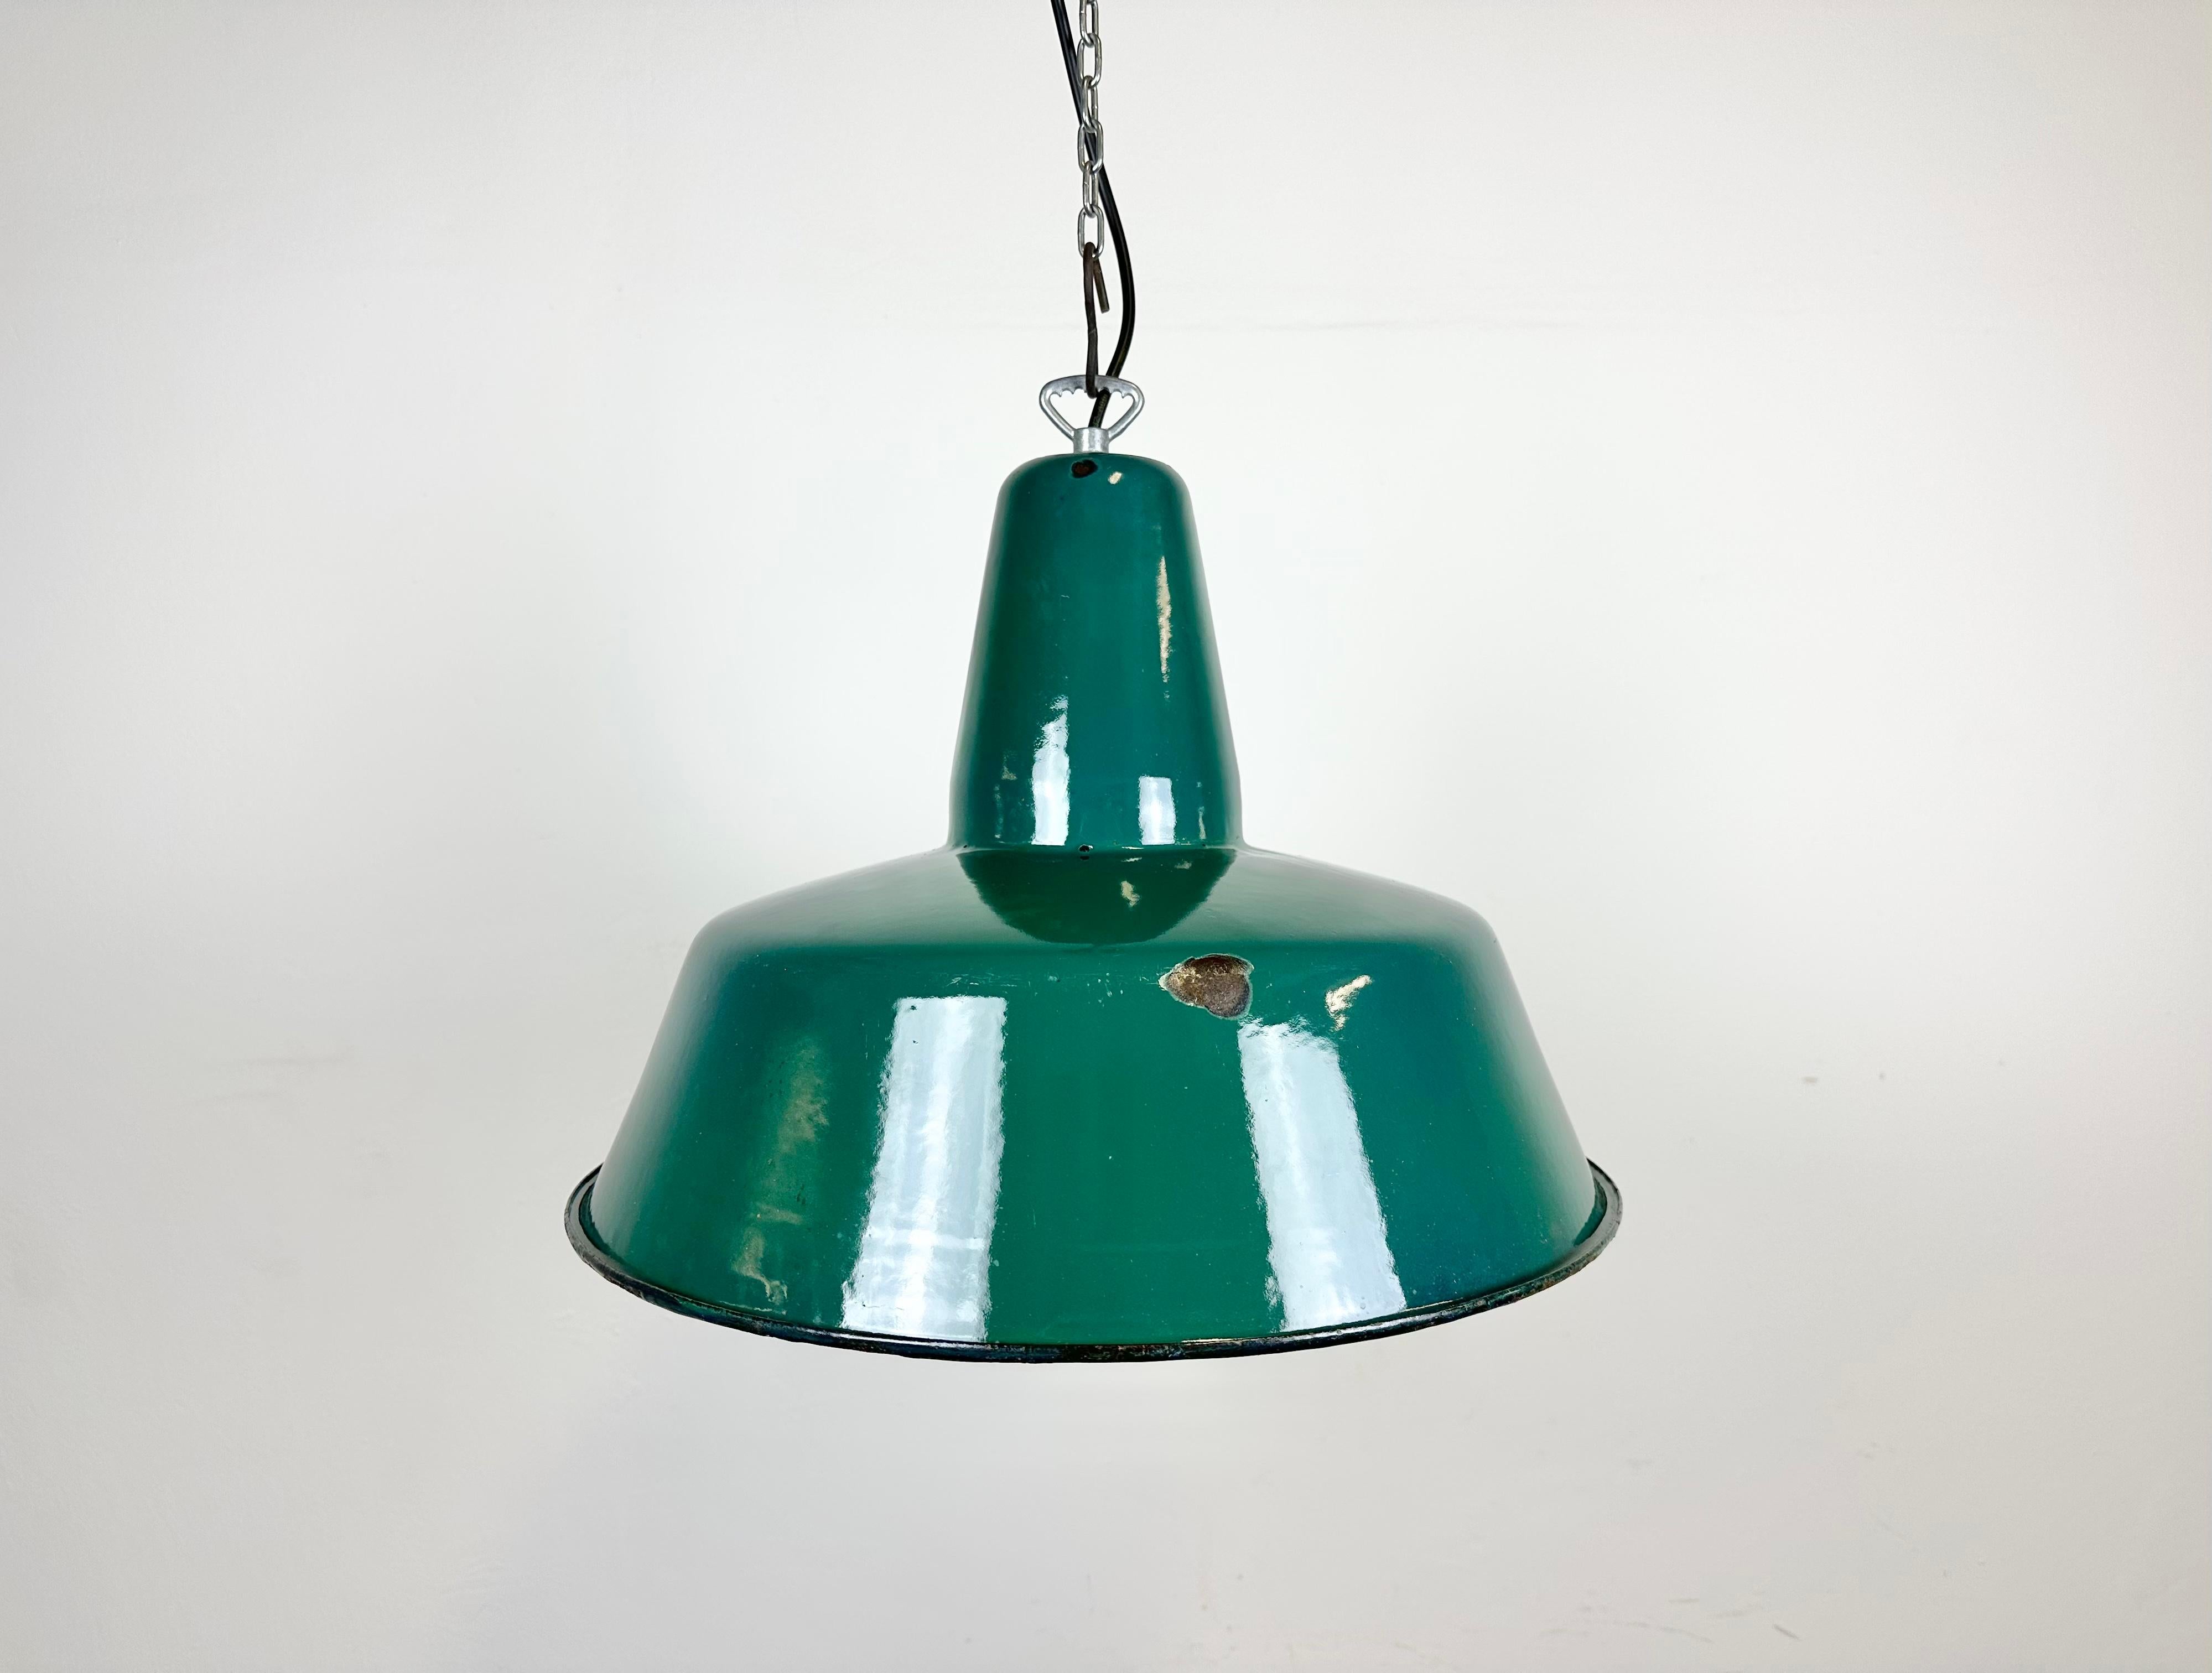 Pendelleuchte aus grüner Emaille, hergestellt in Polen in den 1960er Jahren. Weiße Emaille im Inneren des Schirms. Bügelverschluss. Die Fassung benötigt E 27/E 26-Glühbirnen. Neues Kabel. Vollständig funktionsfähig. Das Gewicht der Leuchte beträgt 2